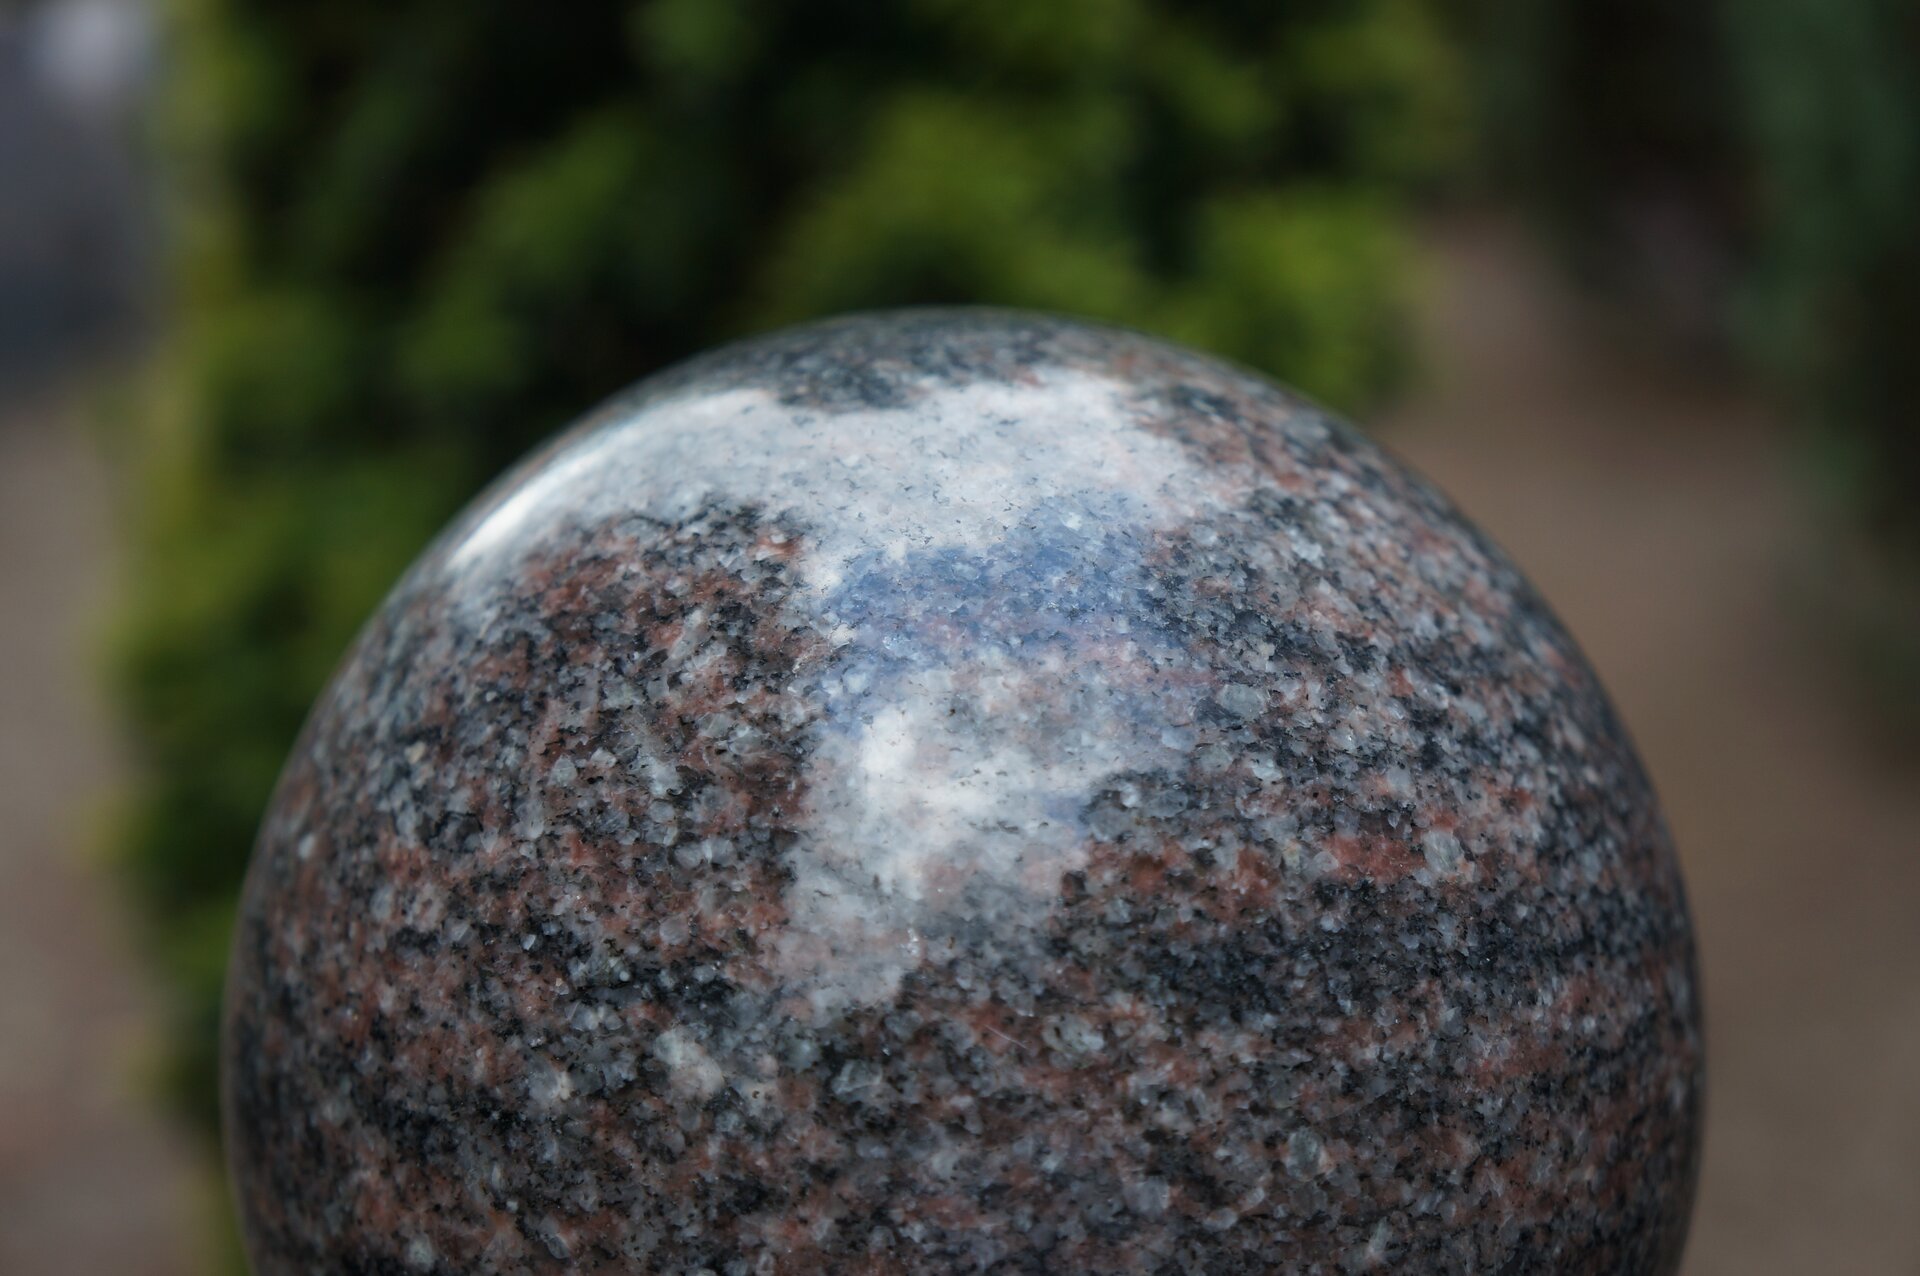 Ilustracja przedstawia rzeźbę pt. „Kula”. Na zdjęciu widoczny jest fragment kuli wykonanej z granitu. Na brązowo-biało-czarnej powierzchni odbija się światło. Tło jest rozmazane.